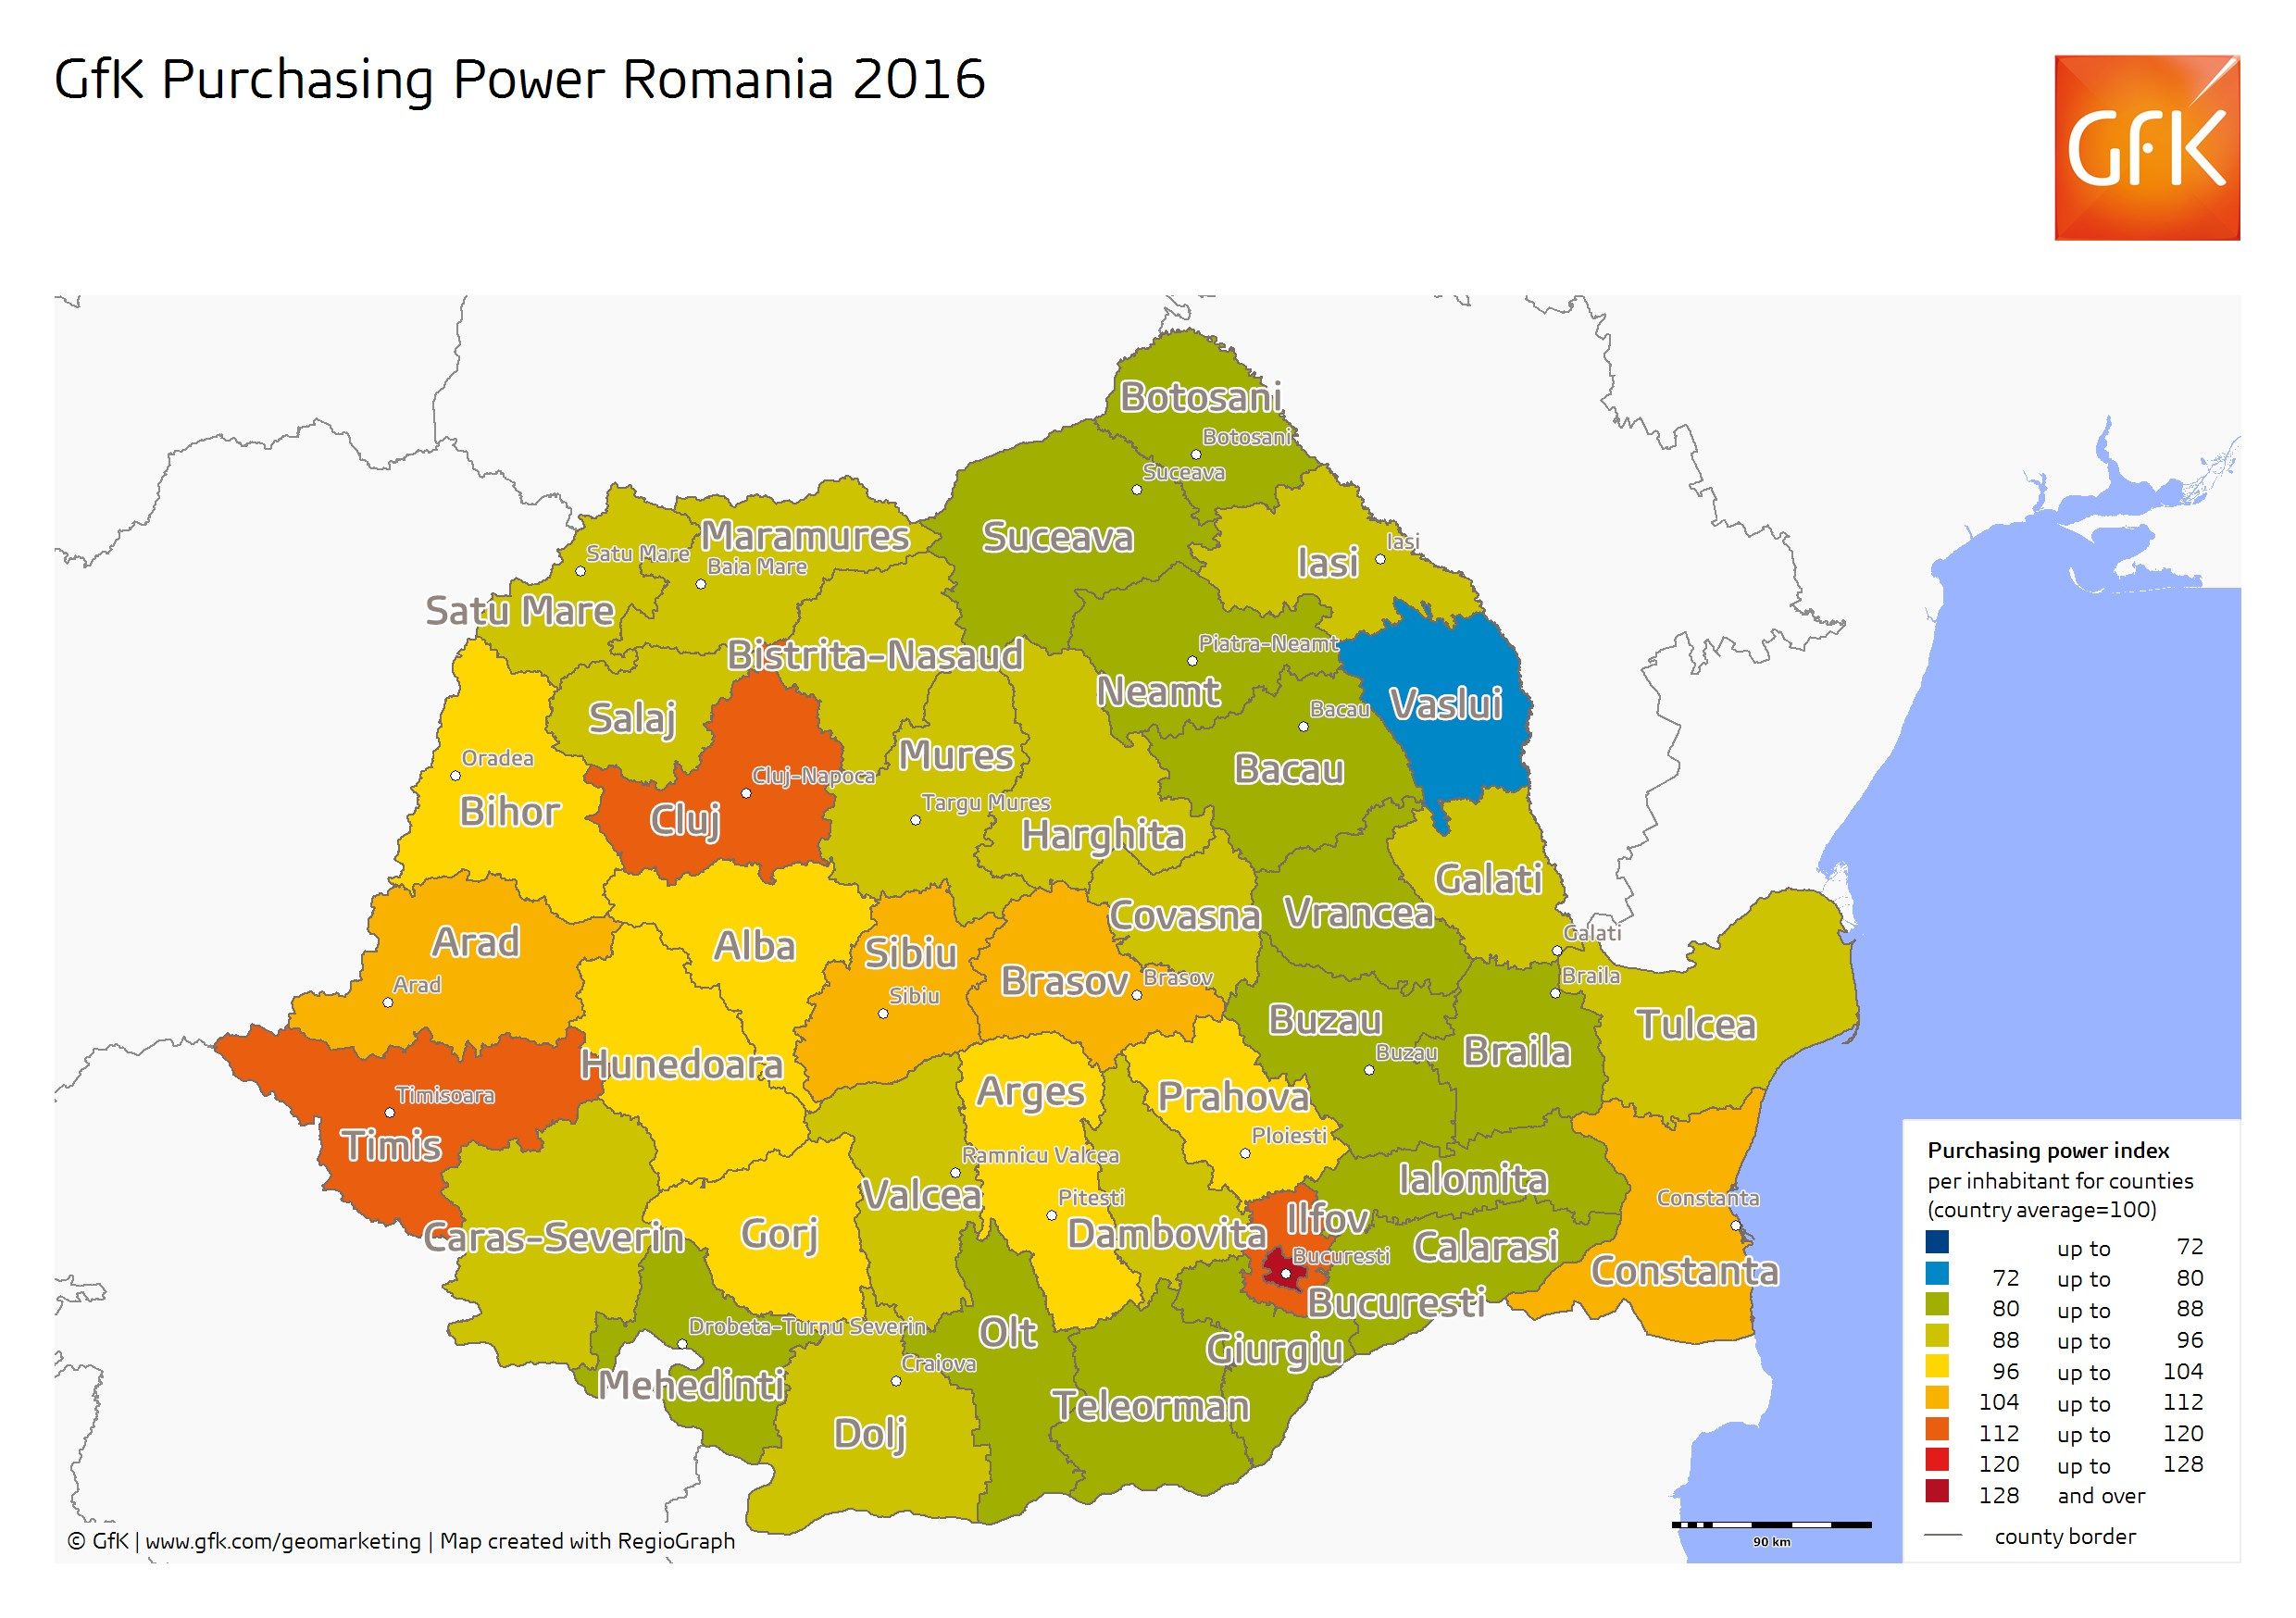 GfK Puterea de Cumparare Romania 2016